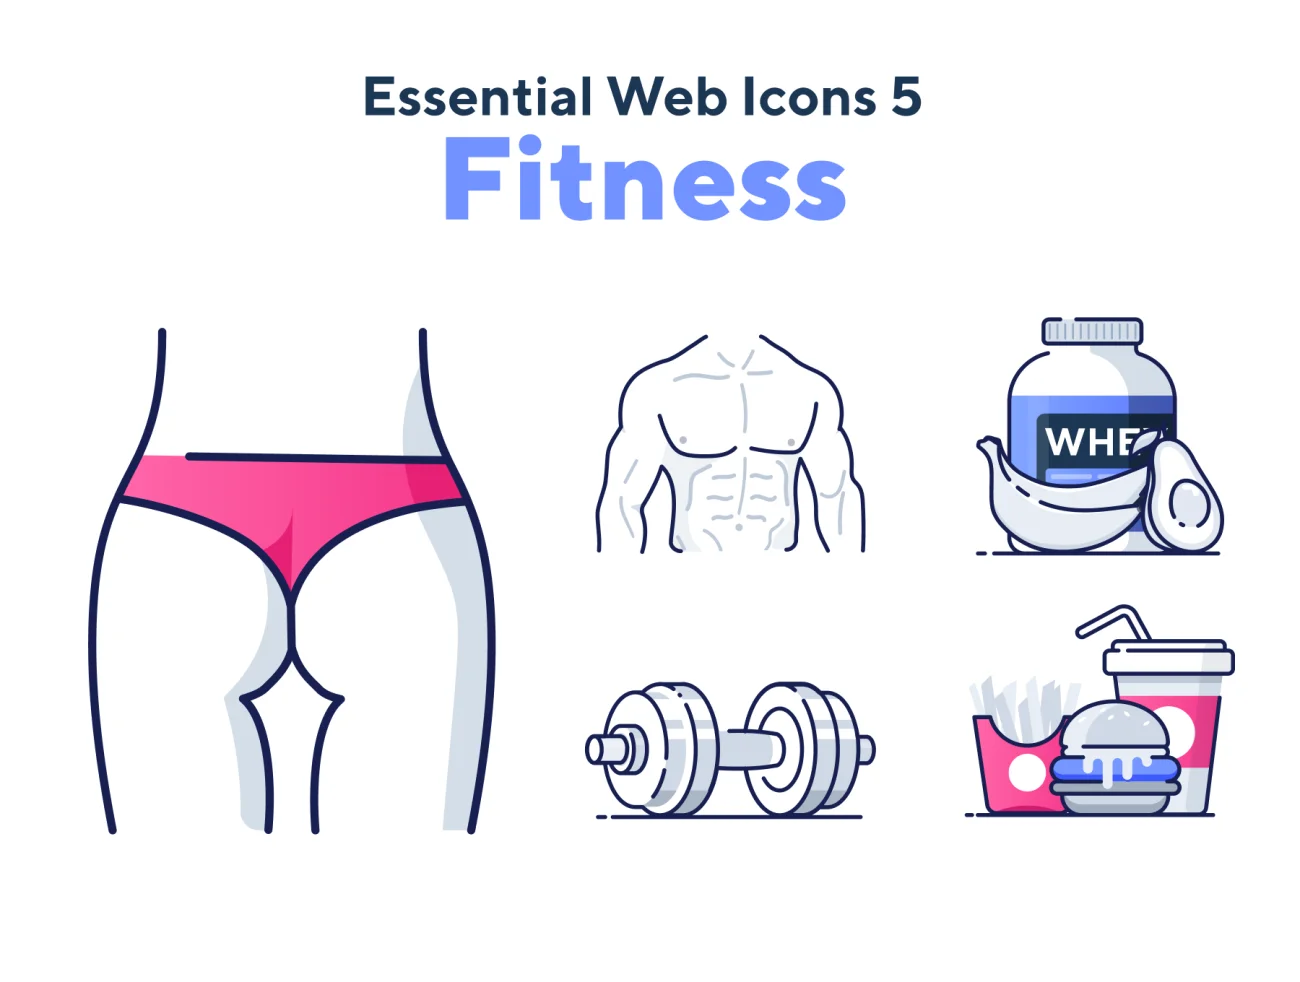 150个健身房锻炼运动器械设备网页应用必备图标 Essential Web Icons Volume 5插图1